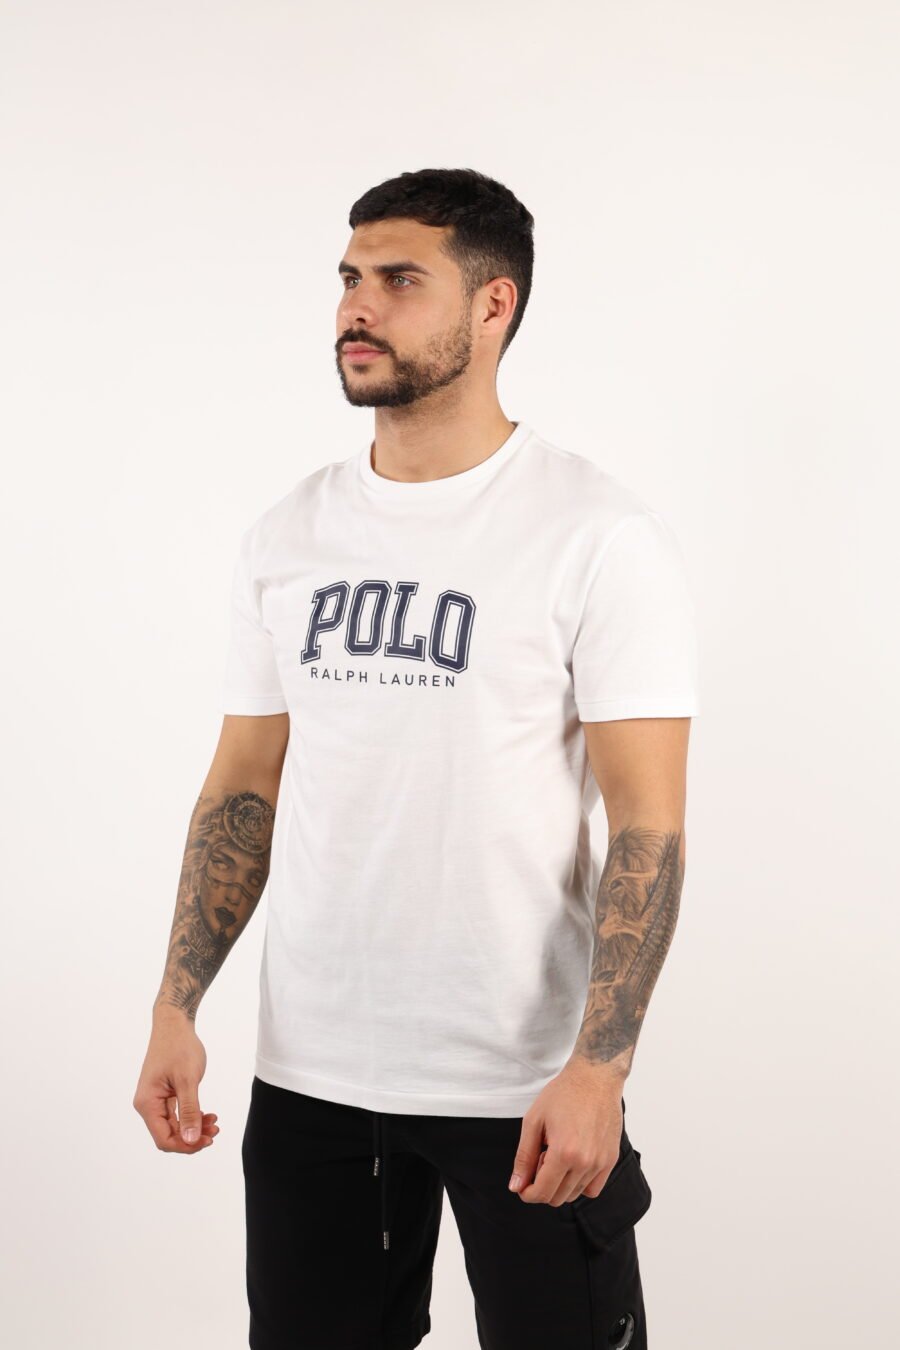 Camiseta blanca con maxilogo "polo" negro - 108956